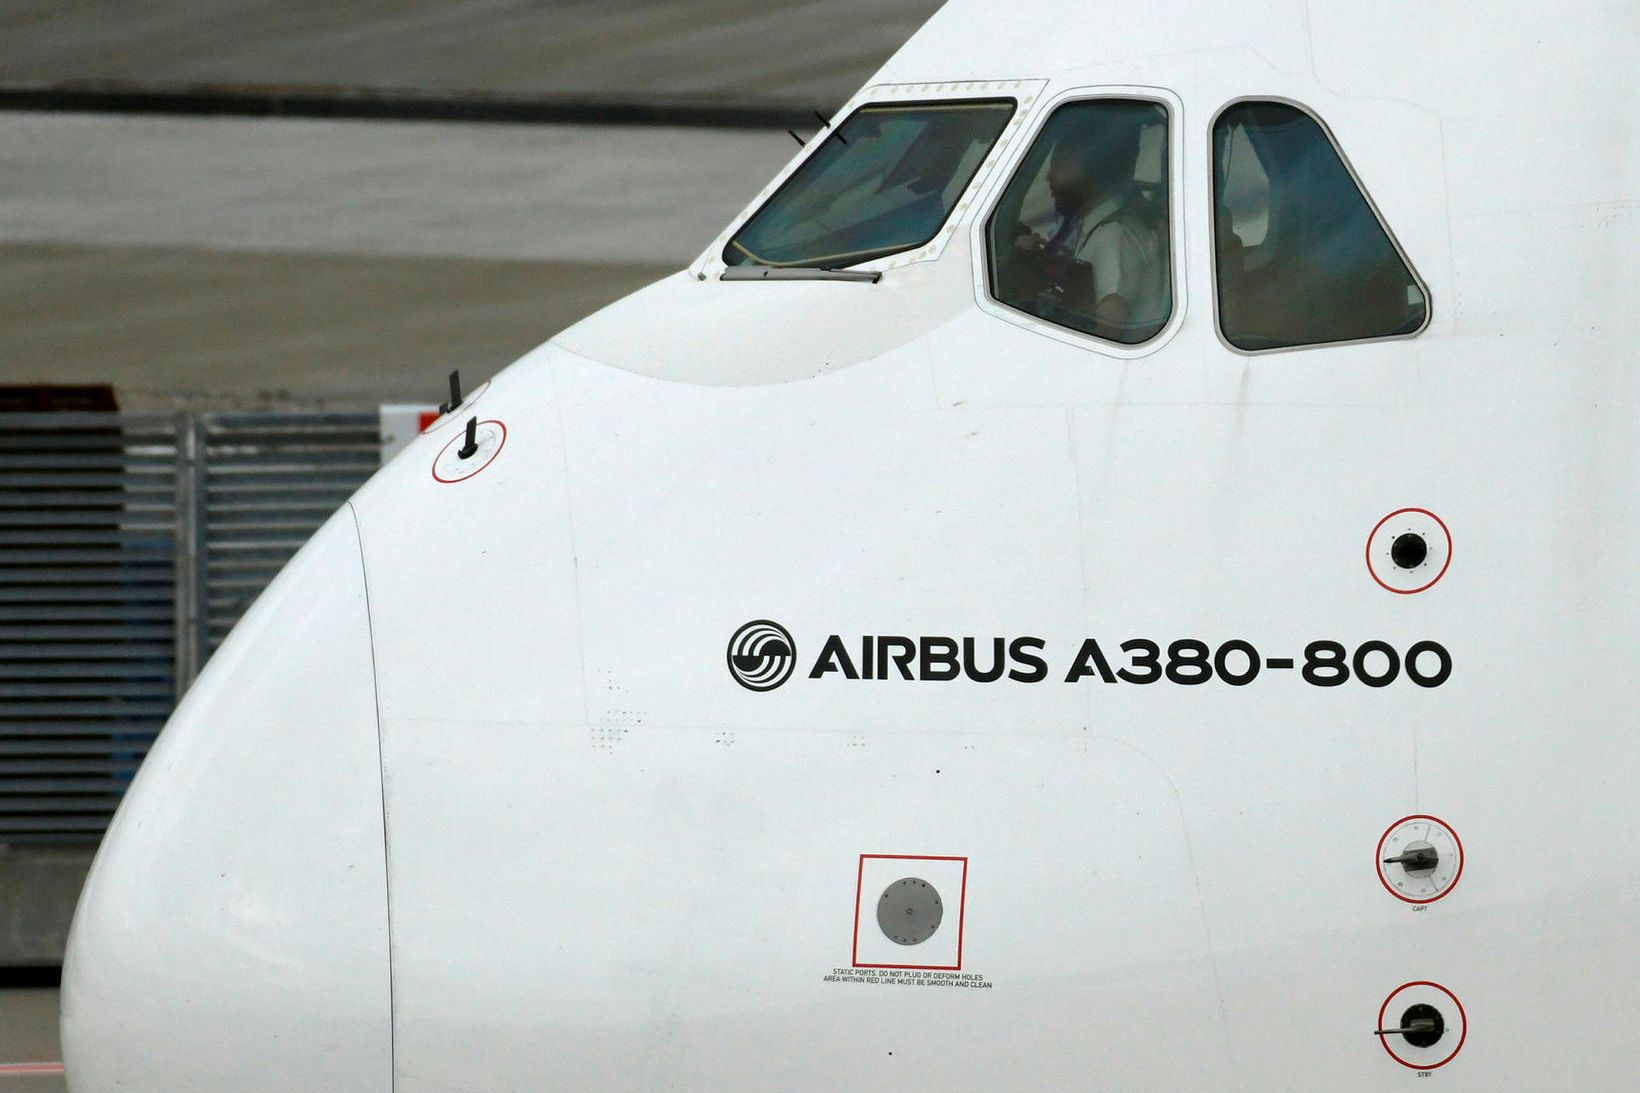 Flugvél Airbus.